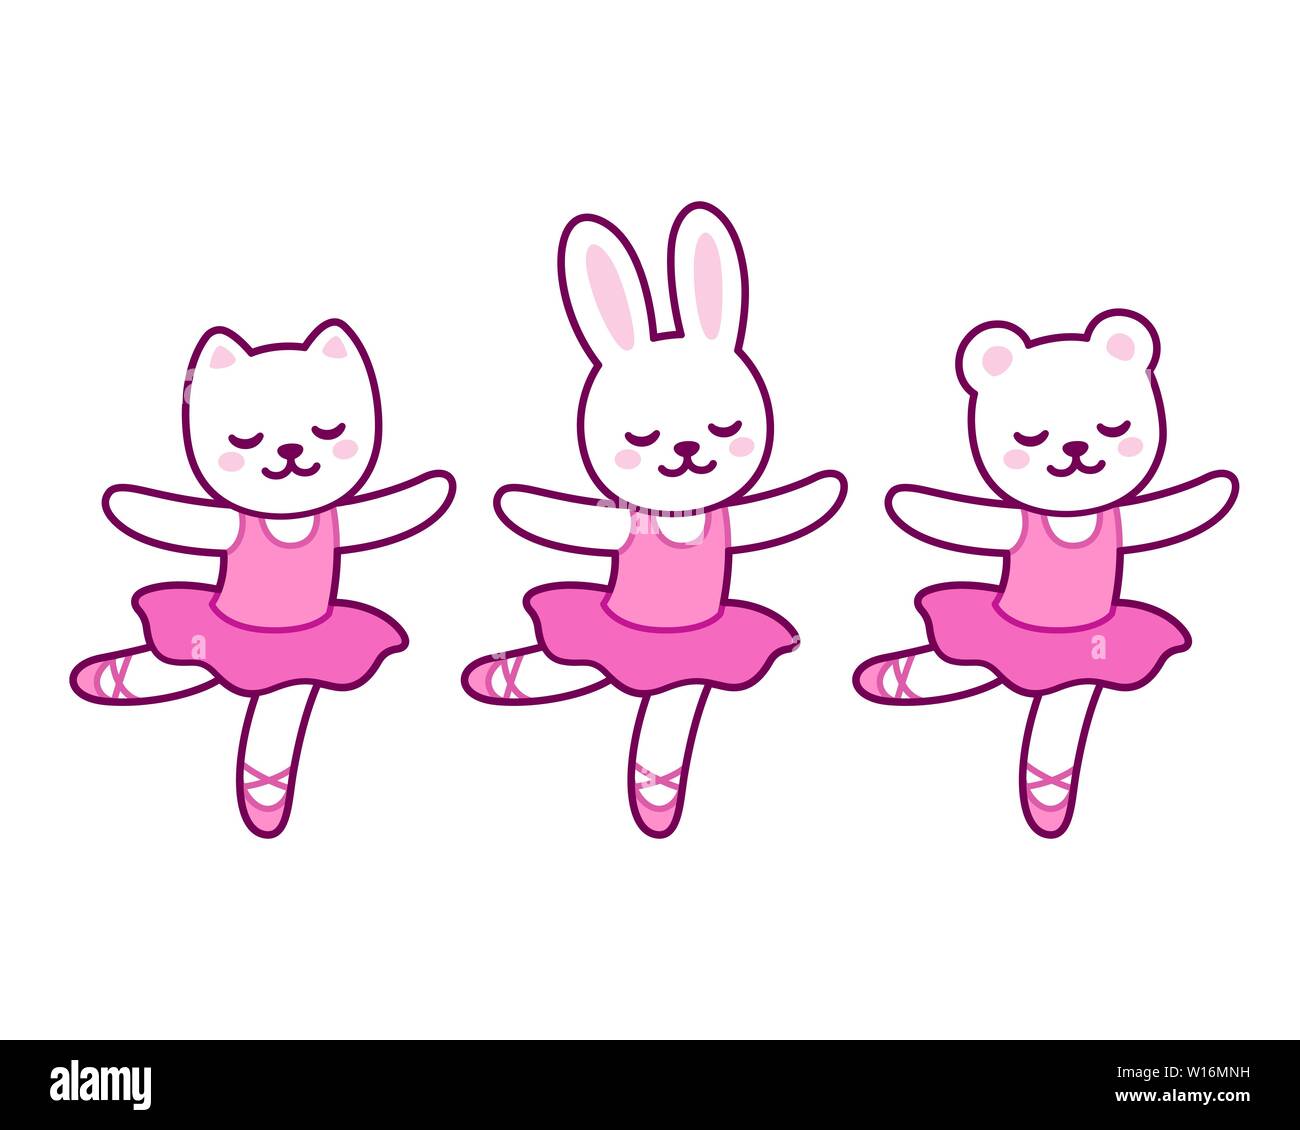 Cute cartoon Tier Figuren tanzen Ballett. Kleine Katze, Hase und Bär  Ballerinas in rosa Tutu. Kawaii und einfache Hand gezeichnet Vector  Illustration Stock-Vektorgrafik - Alamy